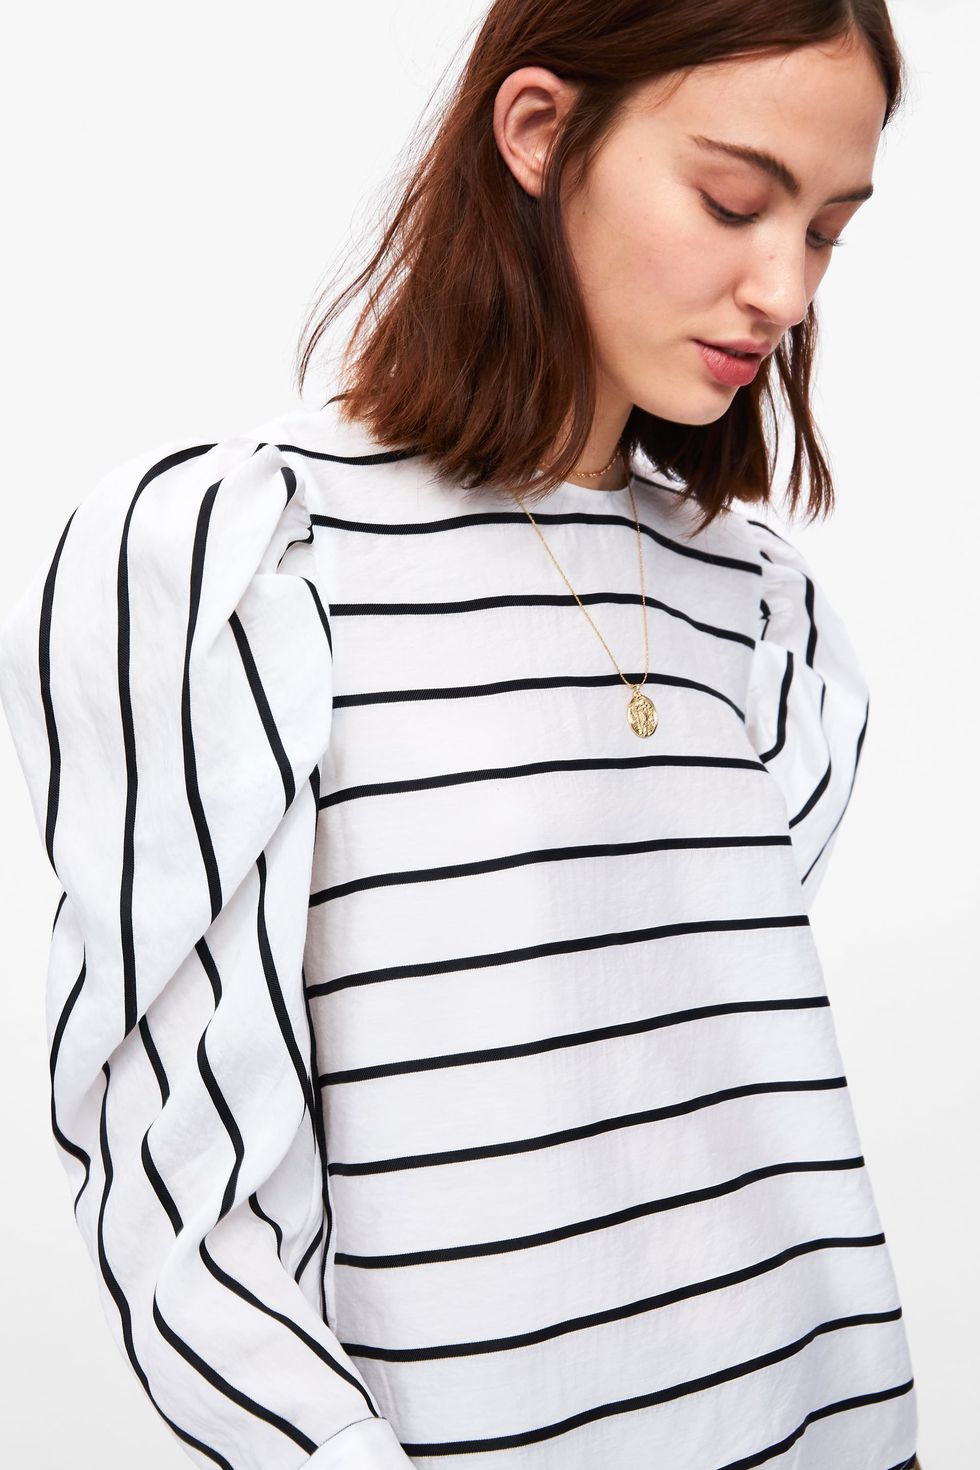 Inconsistente ladrar financiero Zara vende por 26 € la camisa de rayas con la que soñábamos